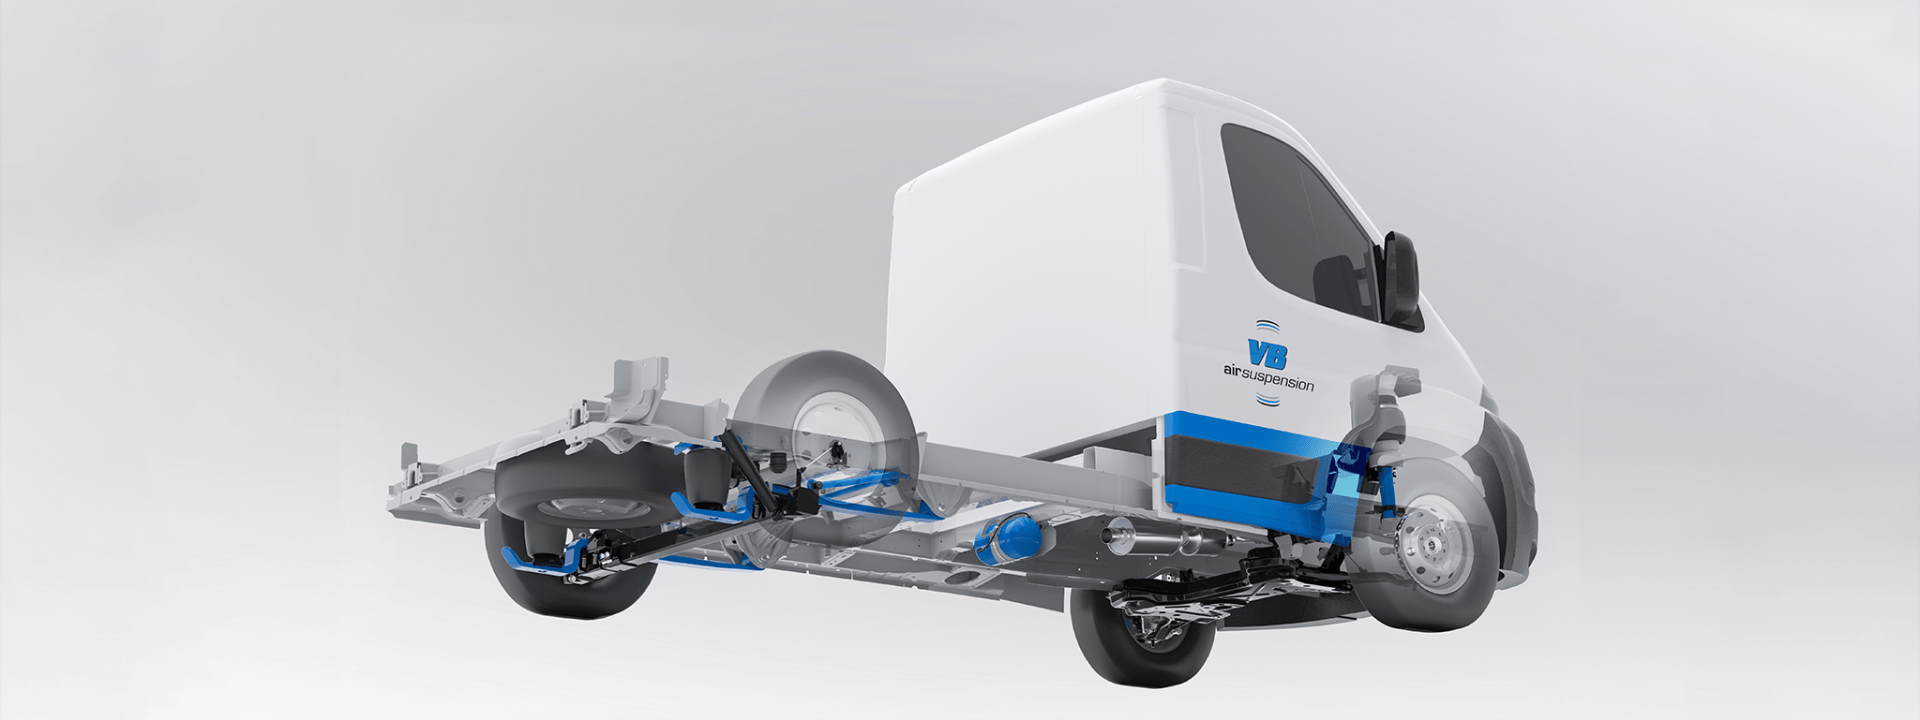 VB-FullAir 4C render - car